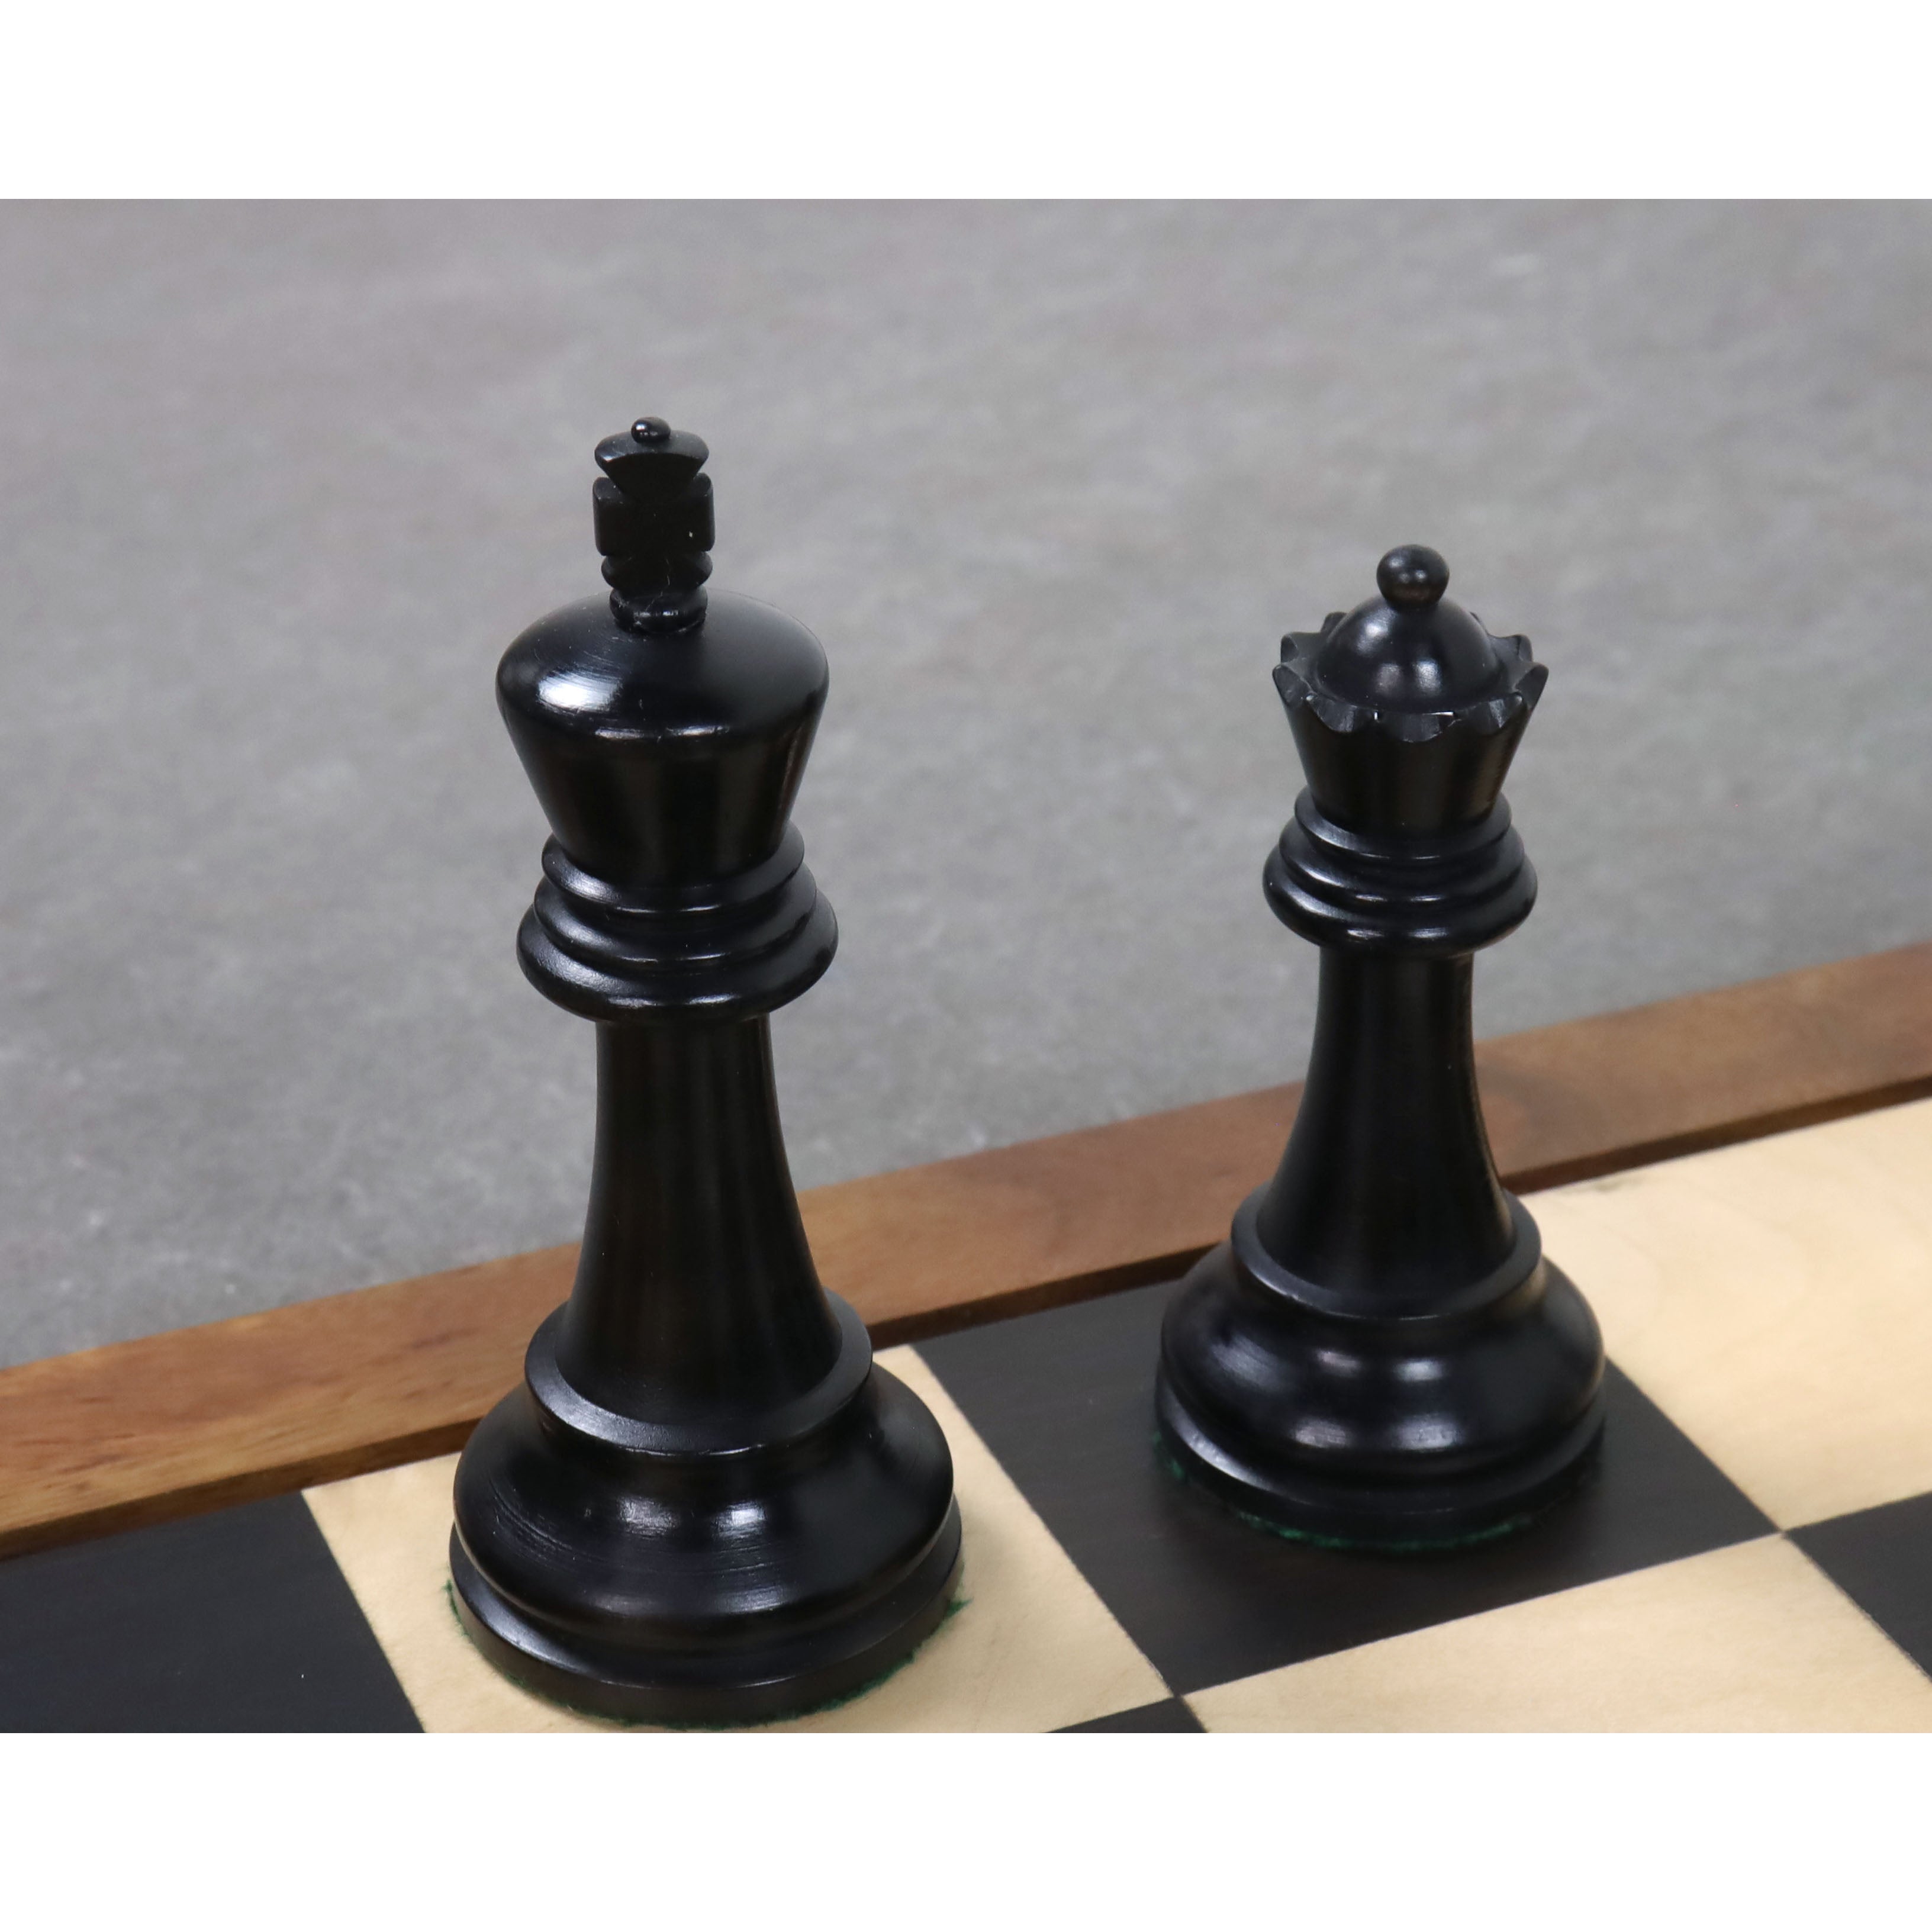 Leningrad Staunton Chess Set- Chess Pieces Only - Ebonised Boxwood - 4" King